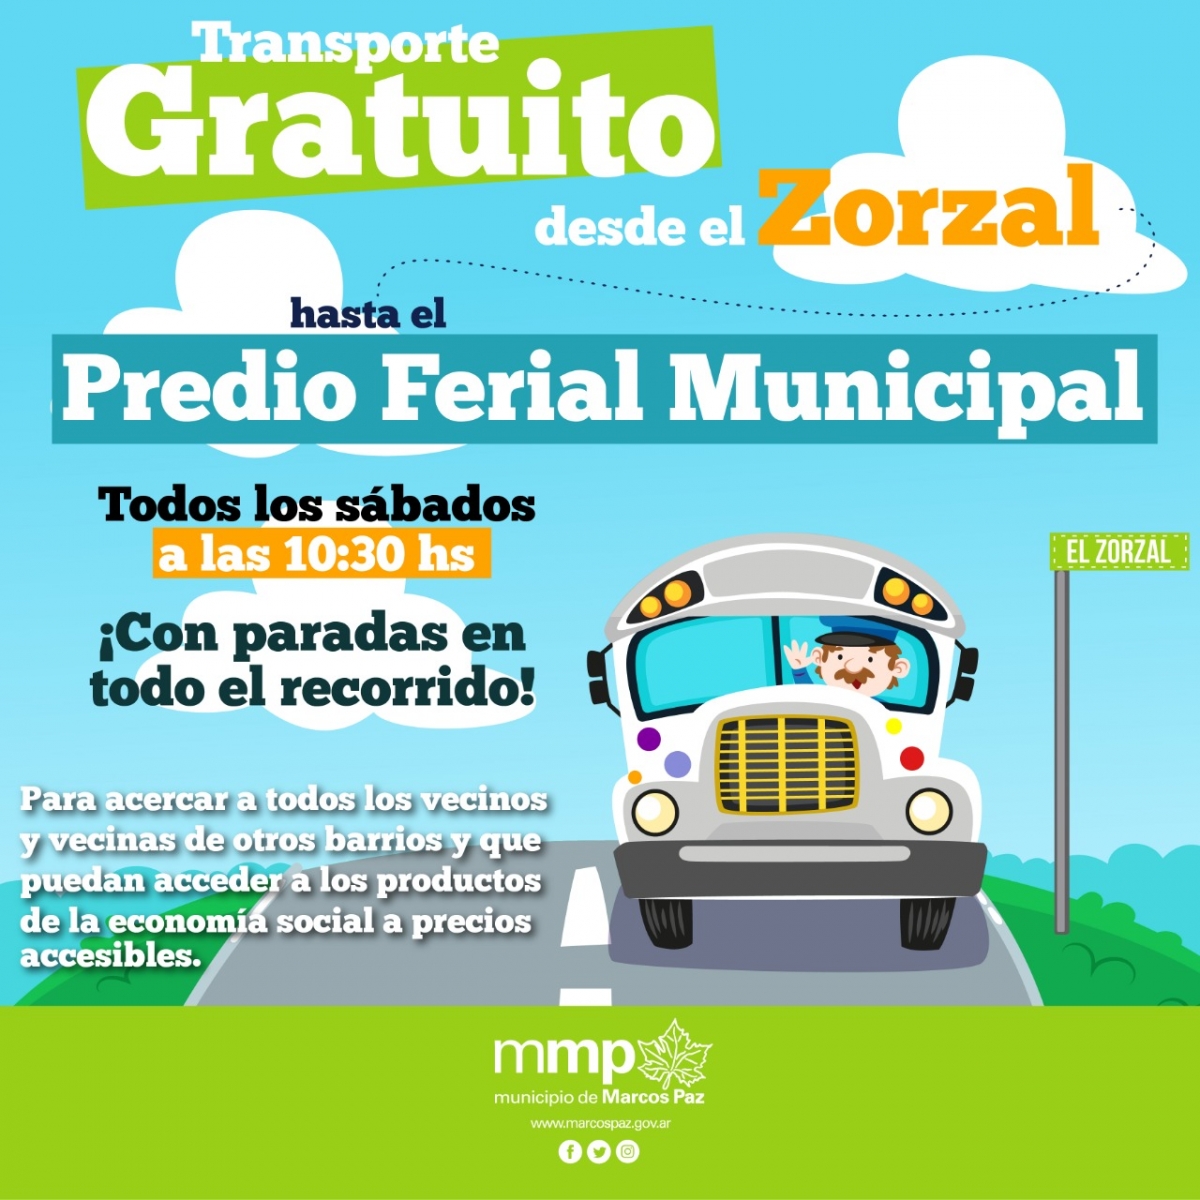 Transporte gratuito los sábados desde El Zorzal hasta el Predio Ferial Municipal